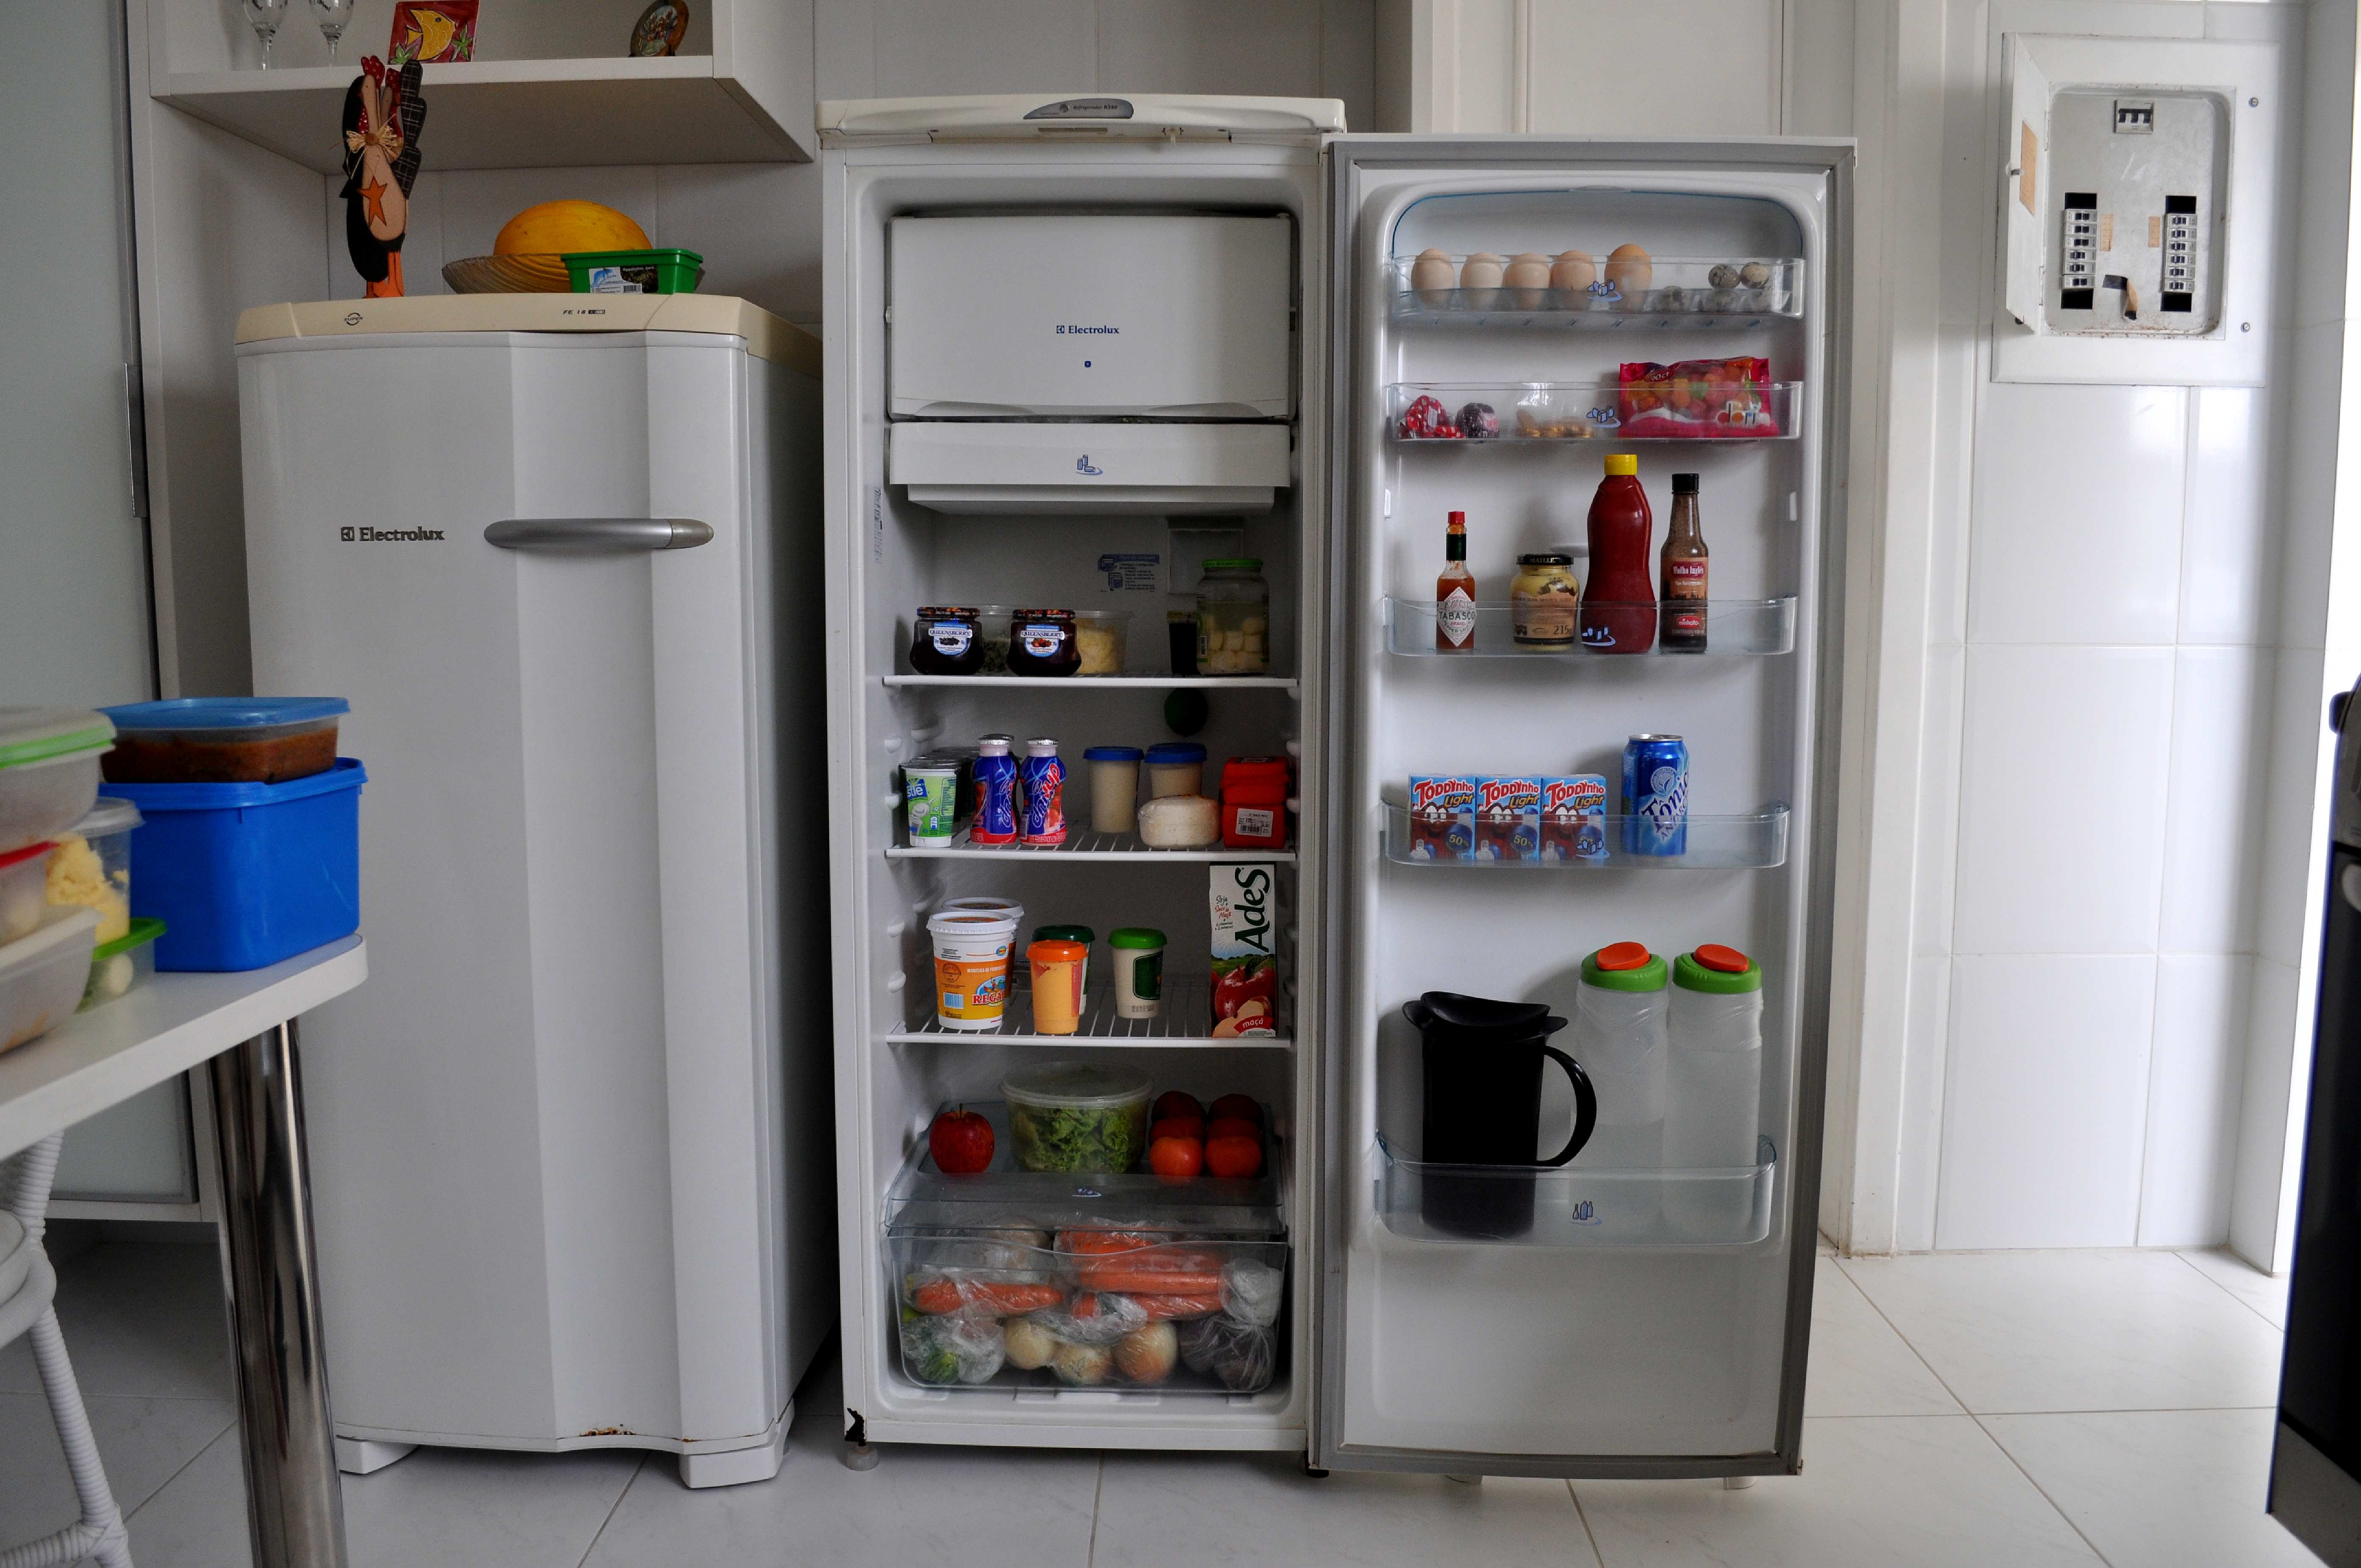 Almacenamiento de alimentos en refrigerador. | Imagen: Pixnio